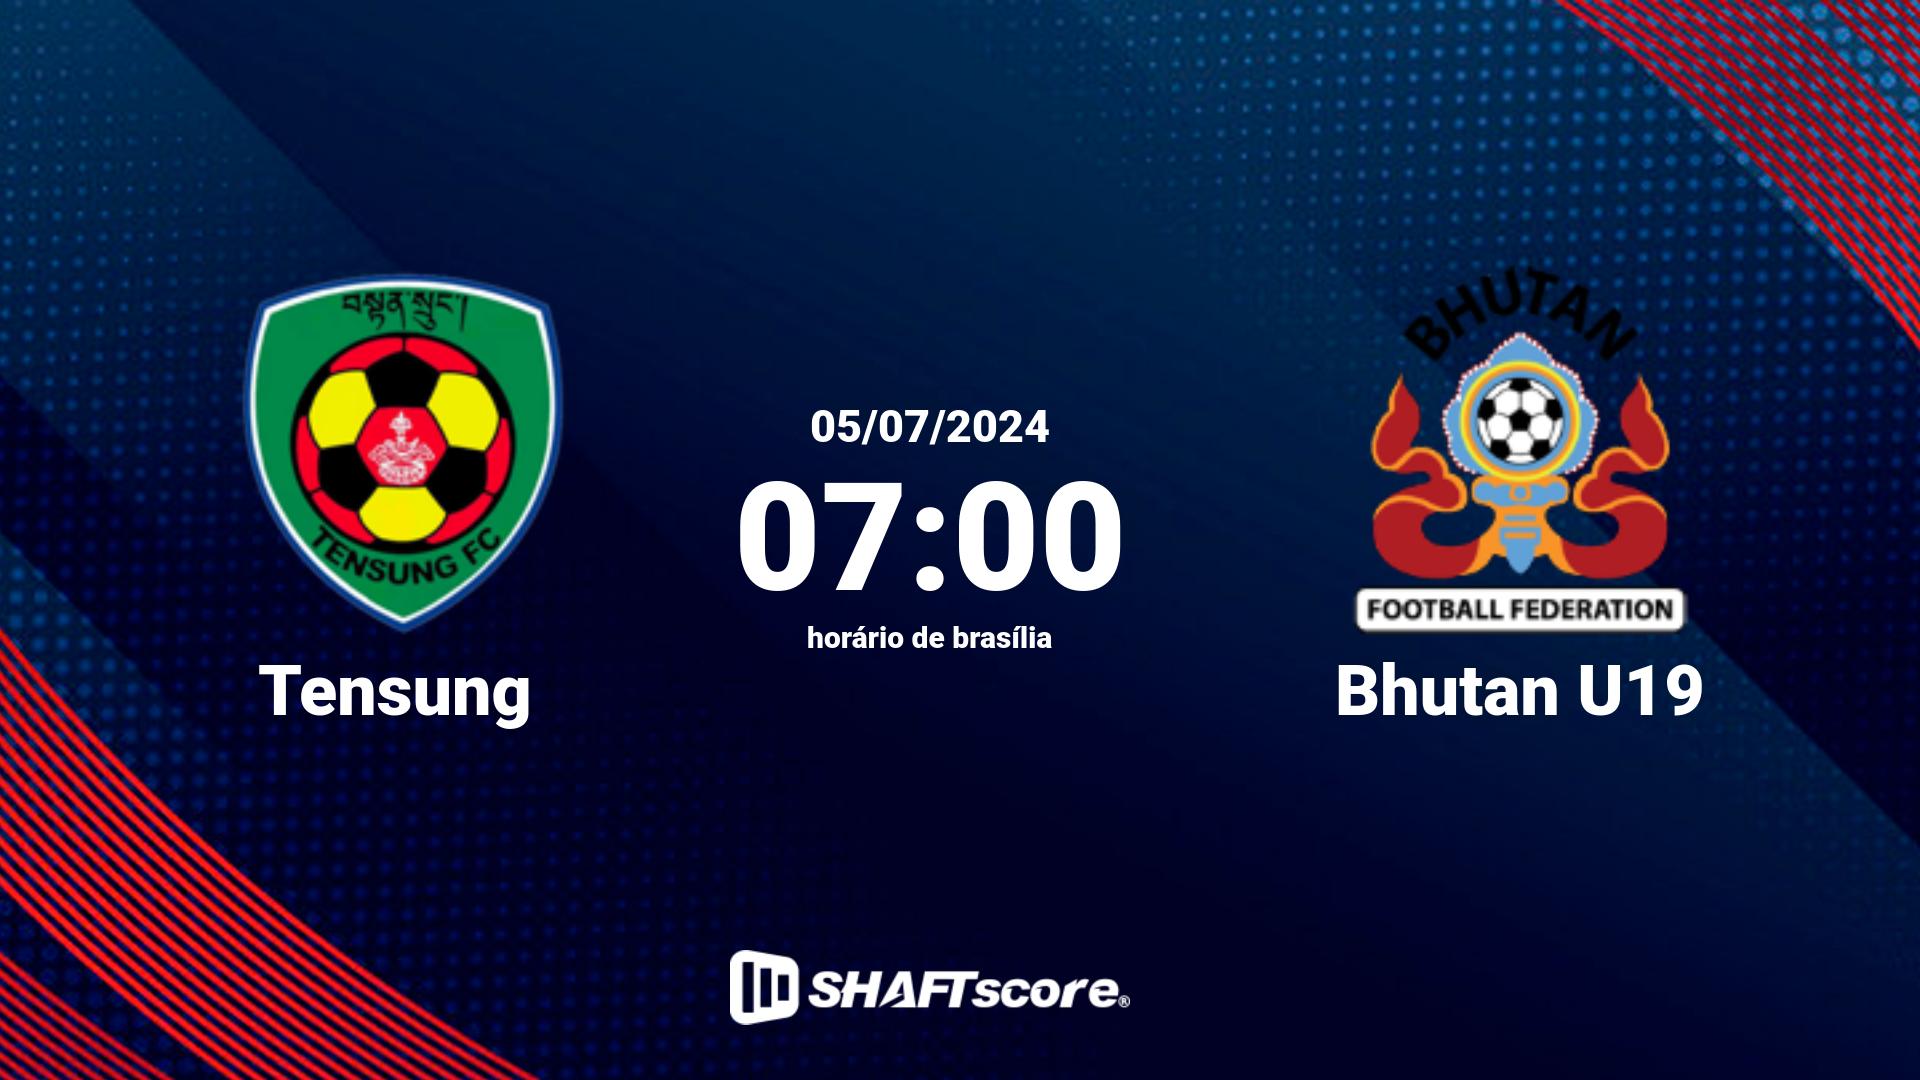 Estatísticas do jogo Tensung vs Bhutan U19 05.07 07:00